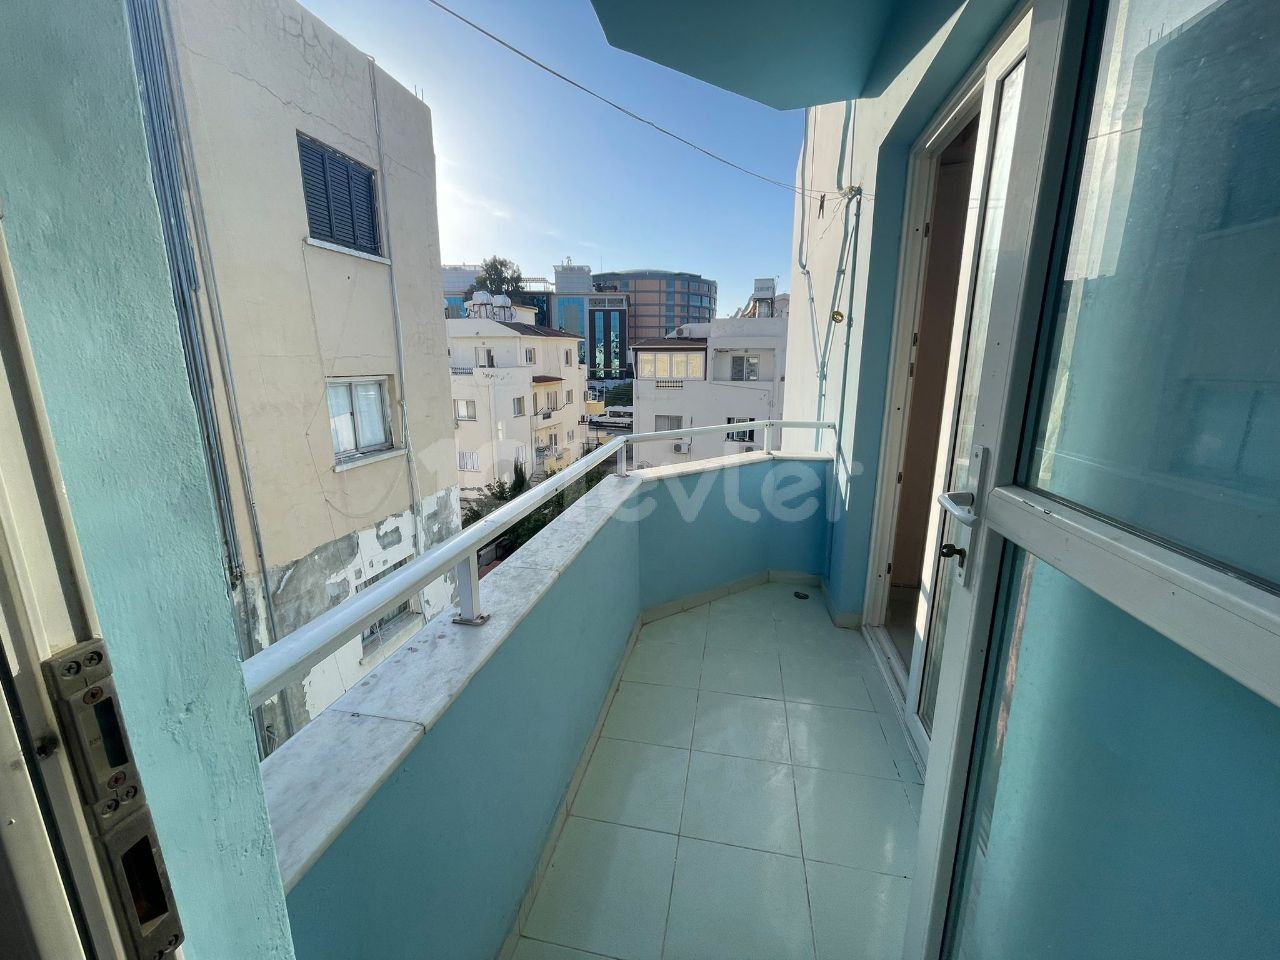 Komplett möblierte 3+1-Wohnung zur Miete in Karakum, Kyrenia